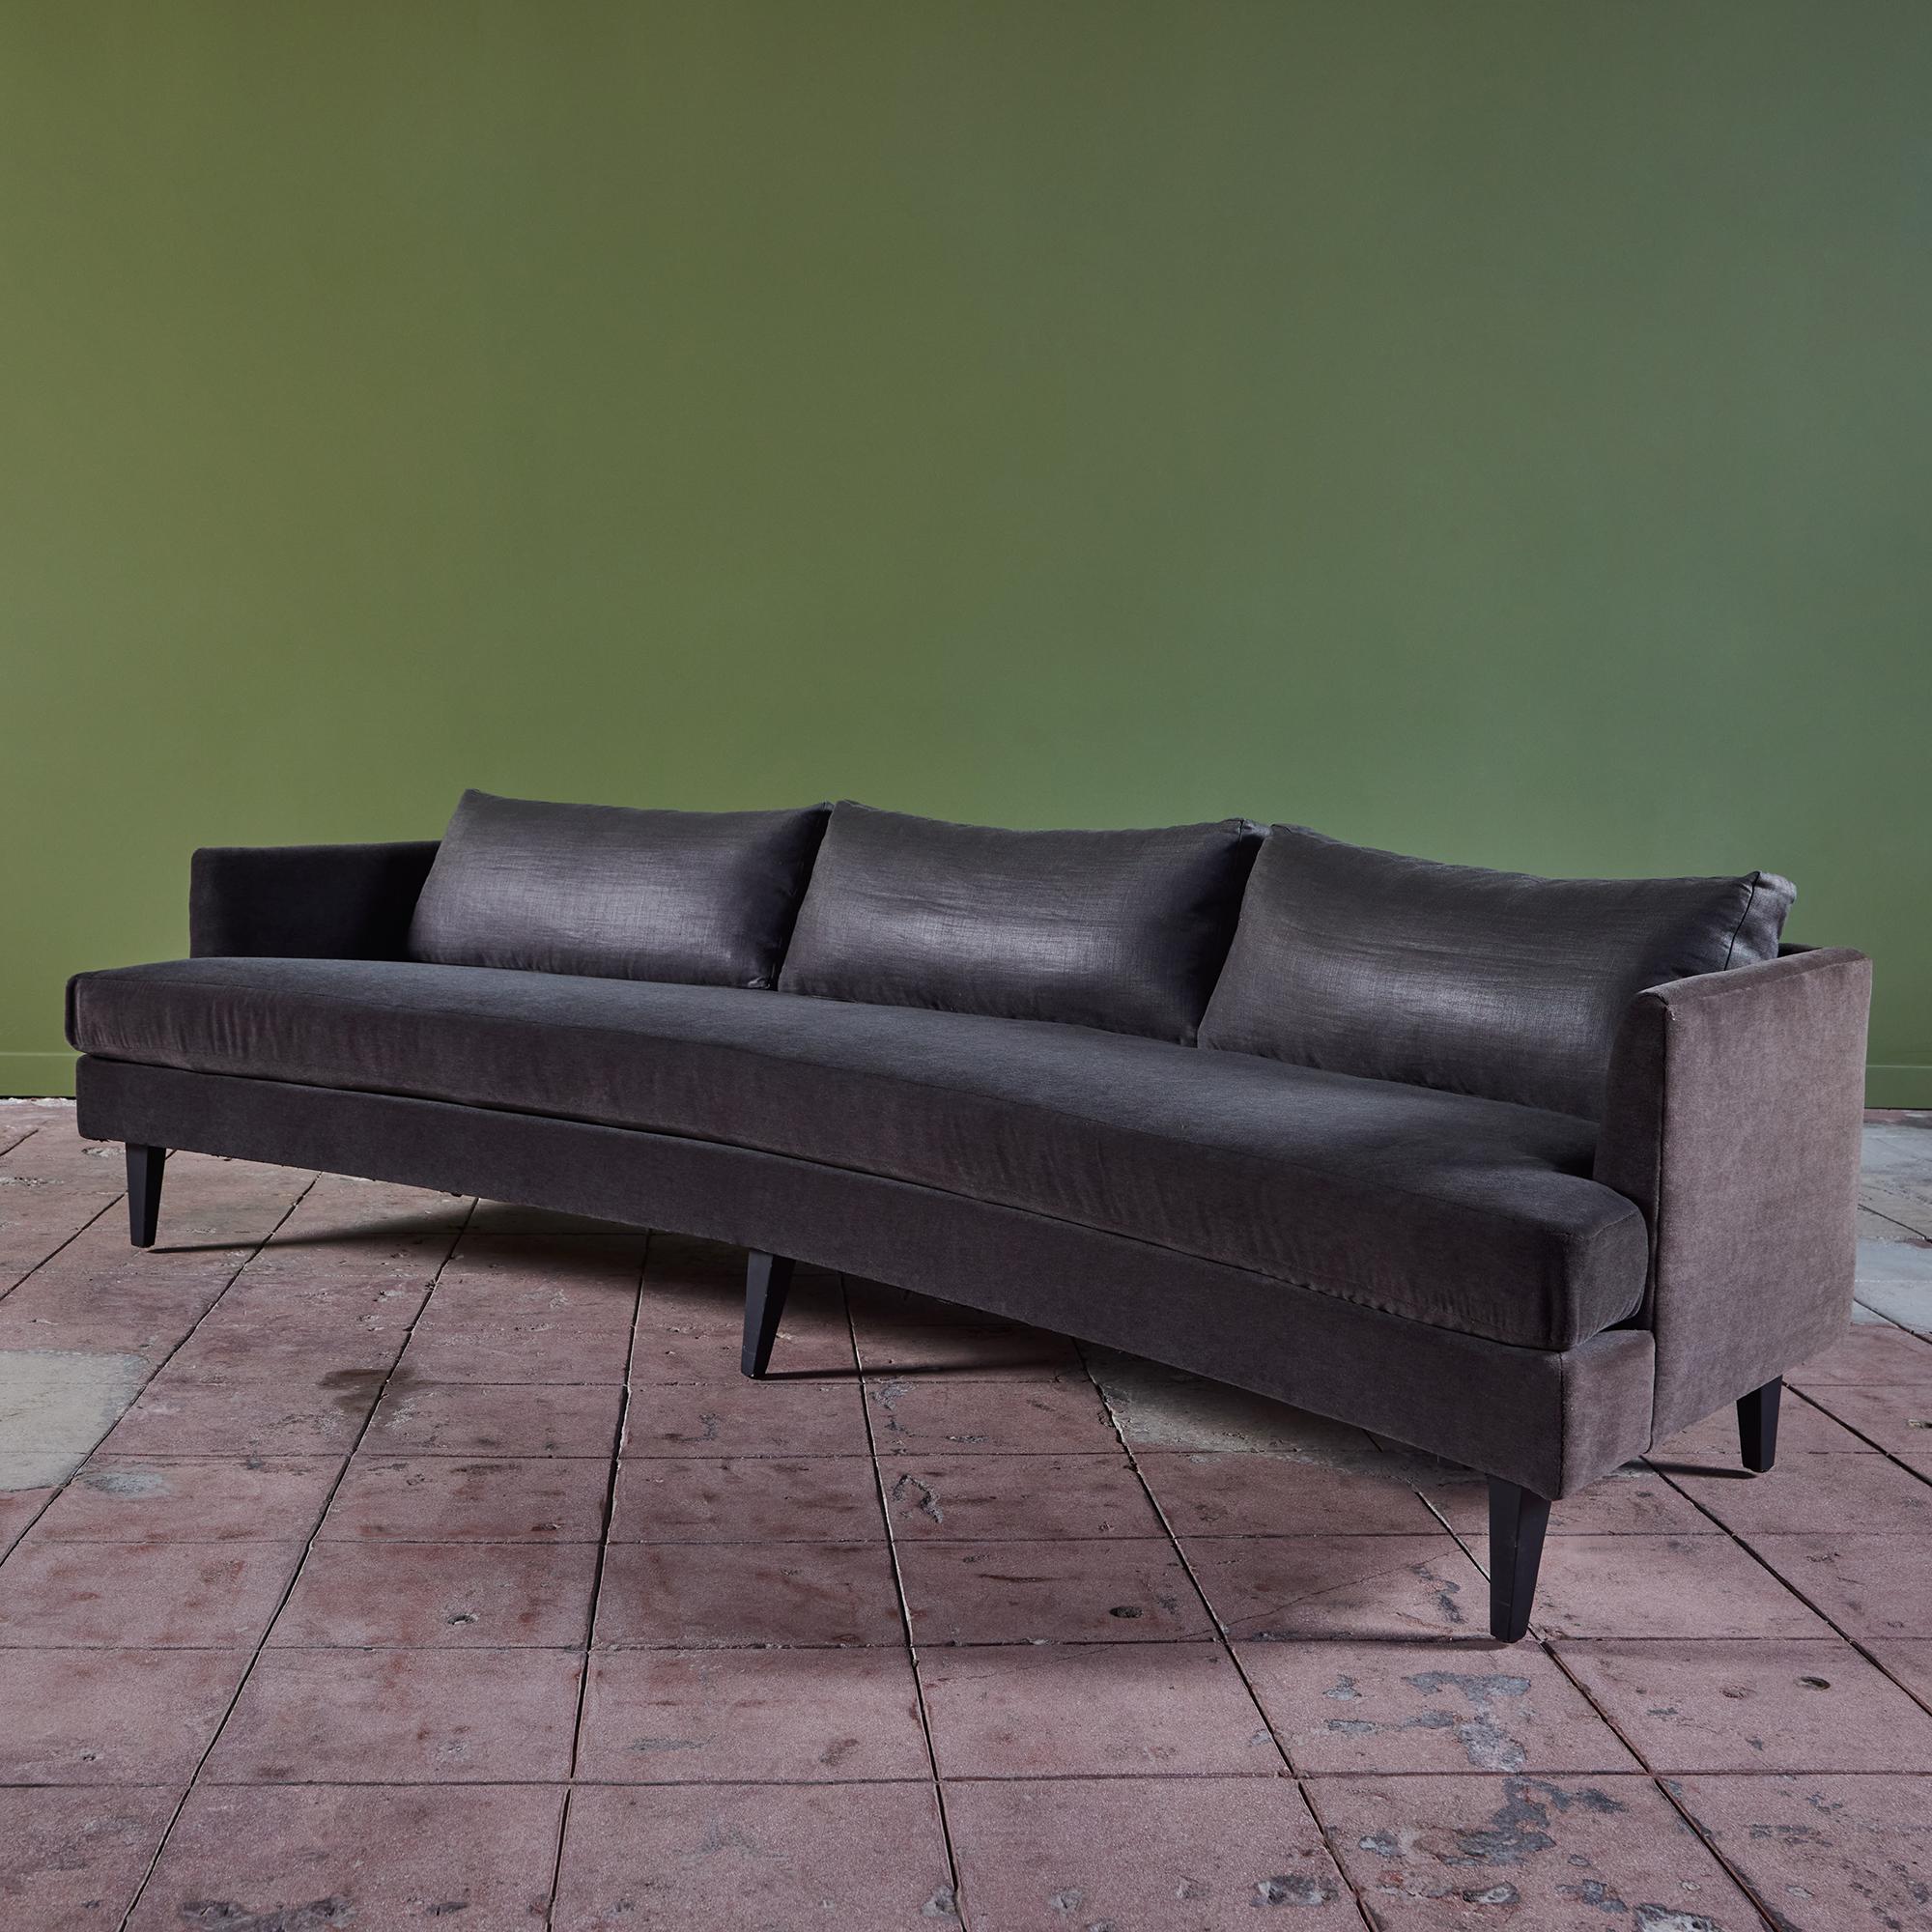 Canapé incurvé dans le style de Dunbar. Ce canapé présente un magnifique revêtement en mohair gris foncé sur le cadre et l'assise. Le dossier est doté de trois coussins recouverts d'un mélange de coton et de lin gris foncé, contrastant parfaitement